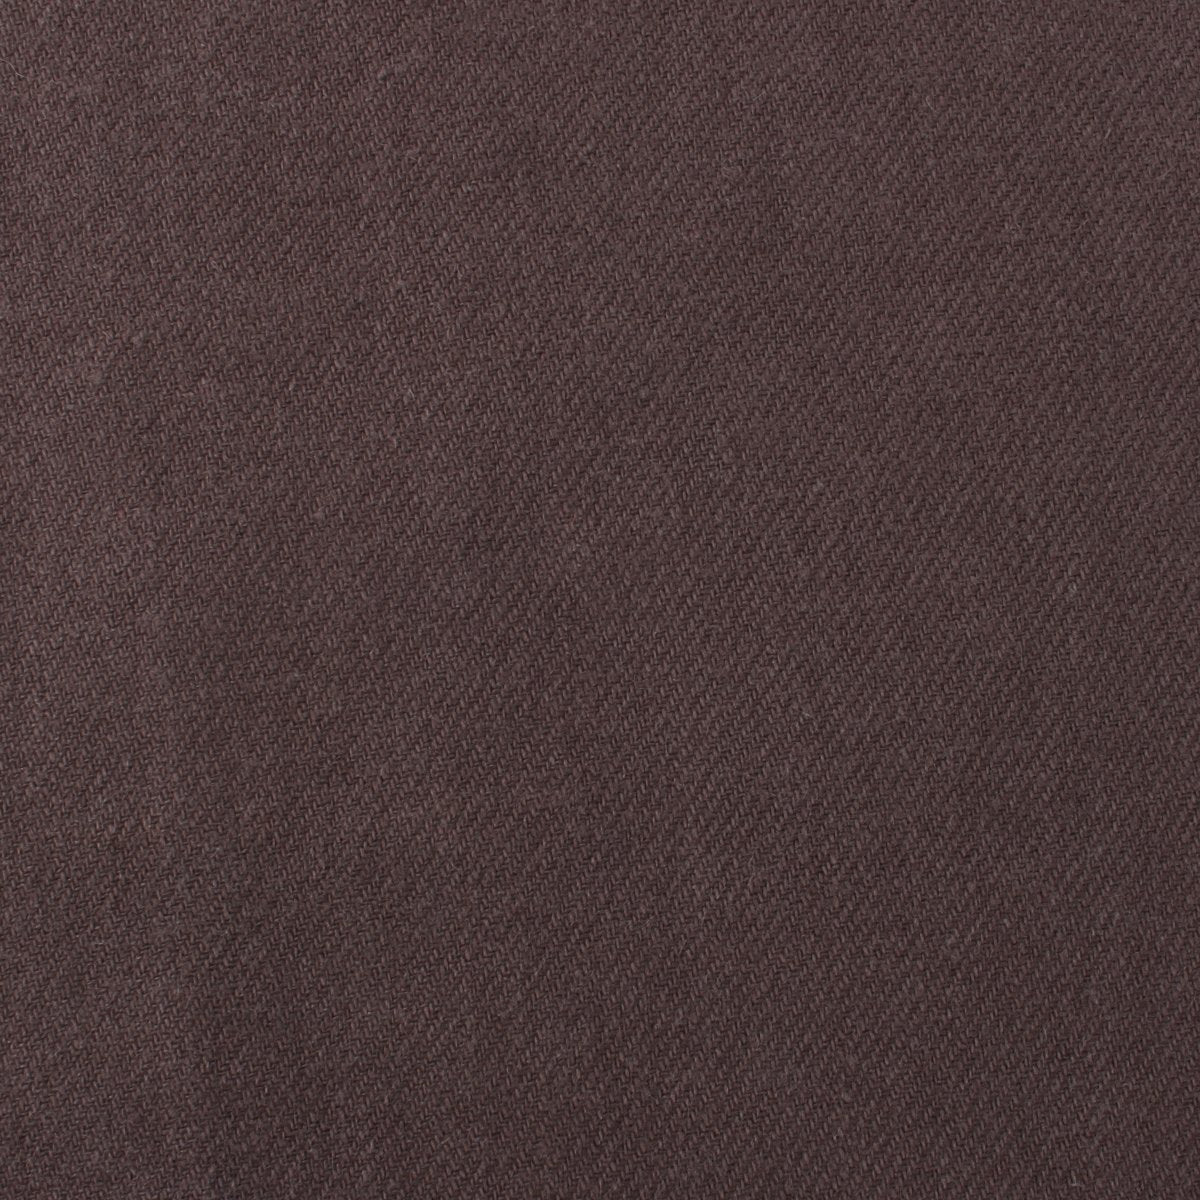 Portobello Grey Brown Linen Pocket Square Fabric